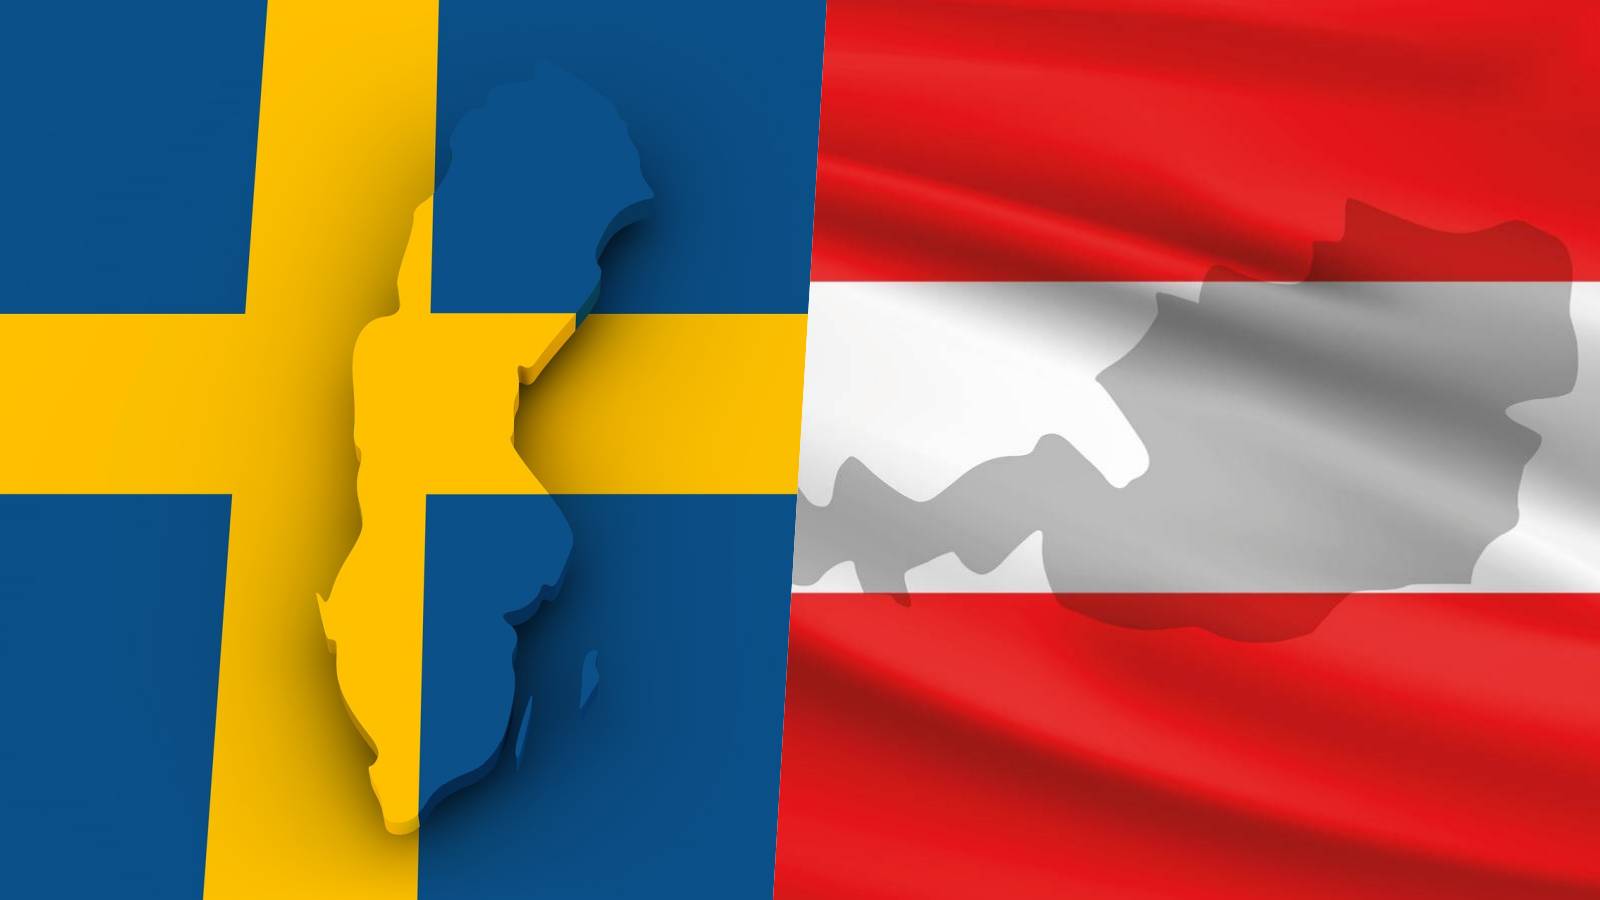 Oostenrijk hielp Italië Zweden Last Minute-aankondiging ter voorkoming van de toetreding van Roemenië tot Schengen